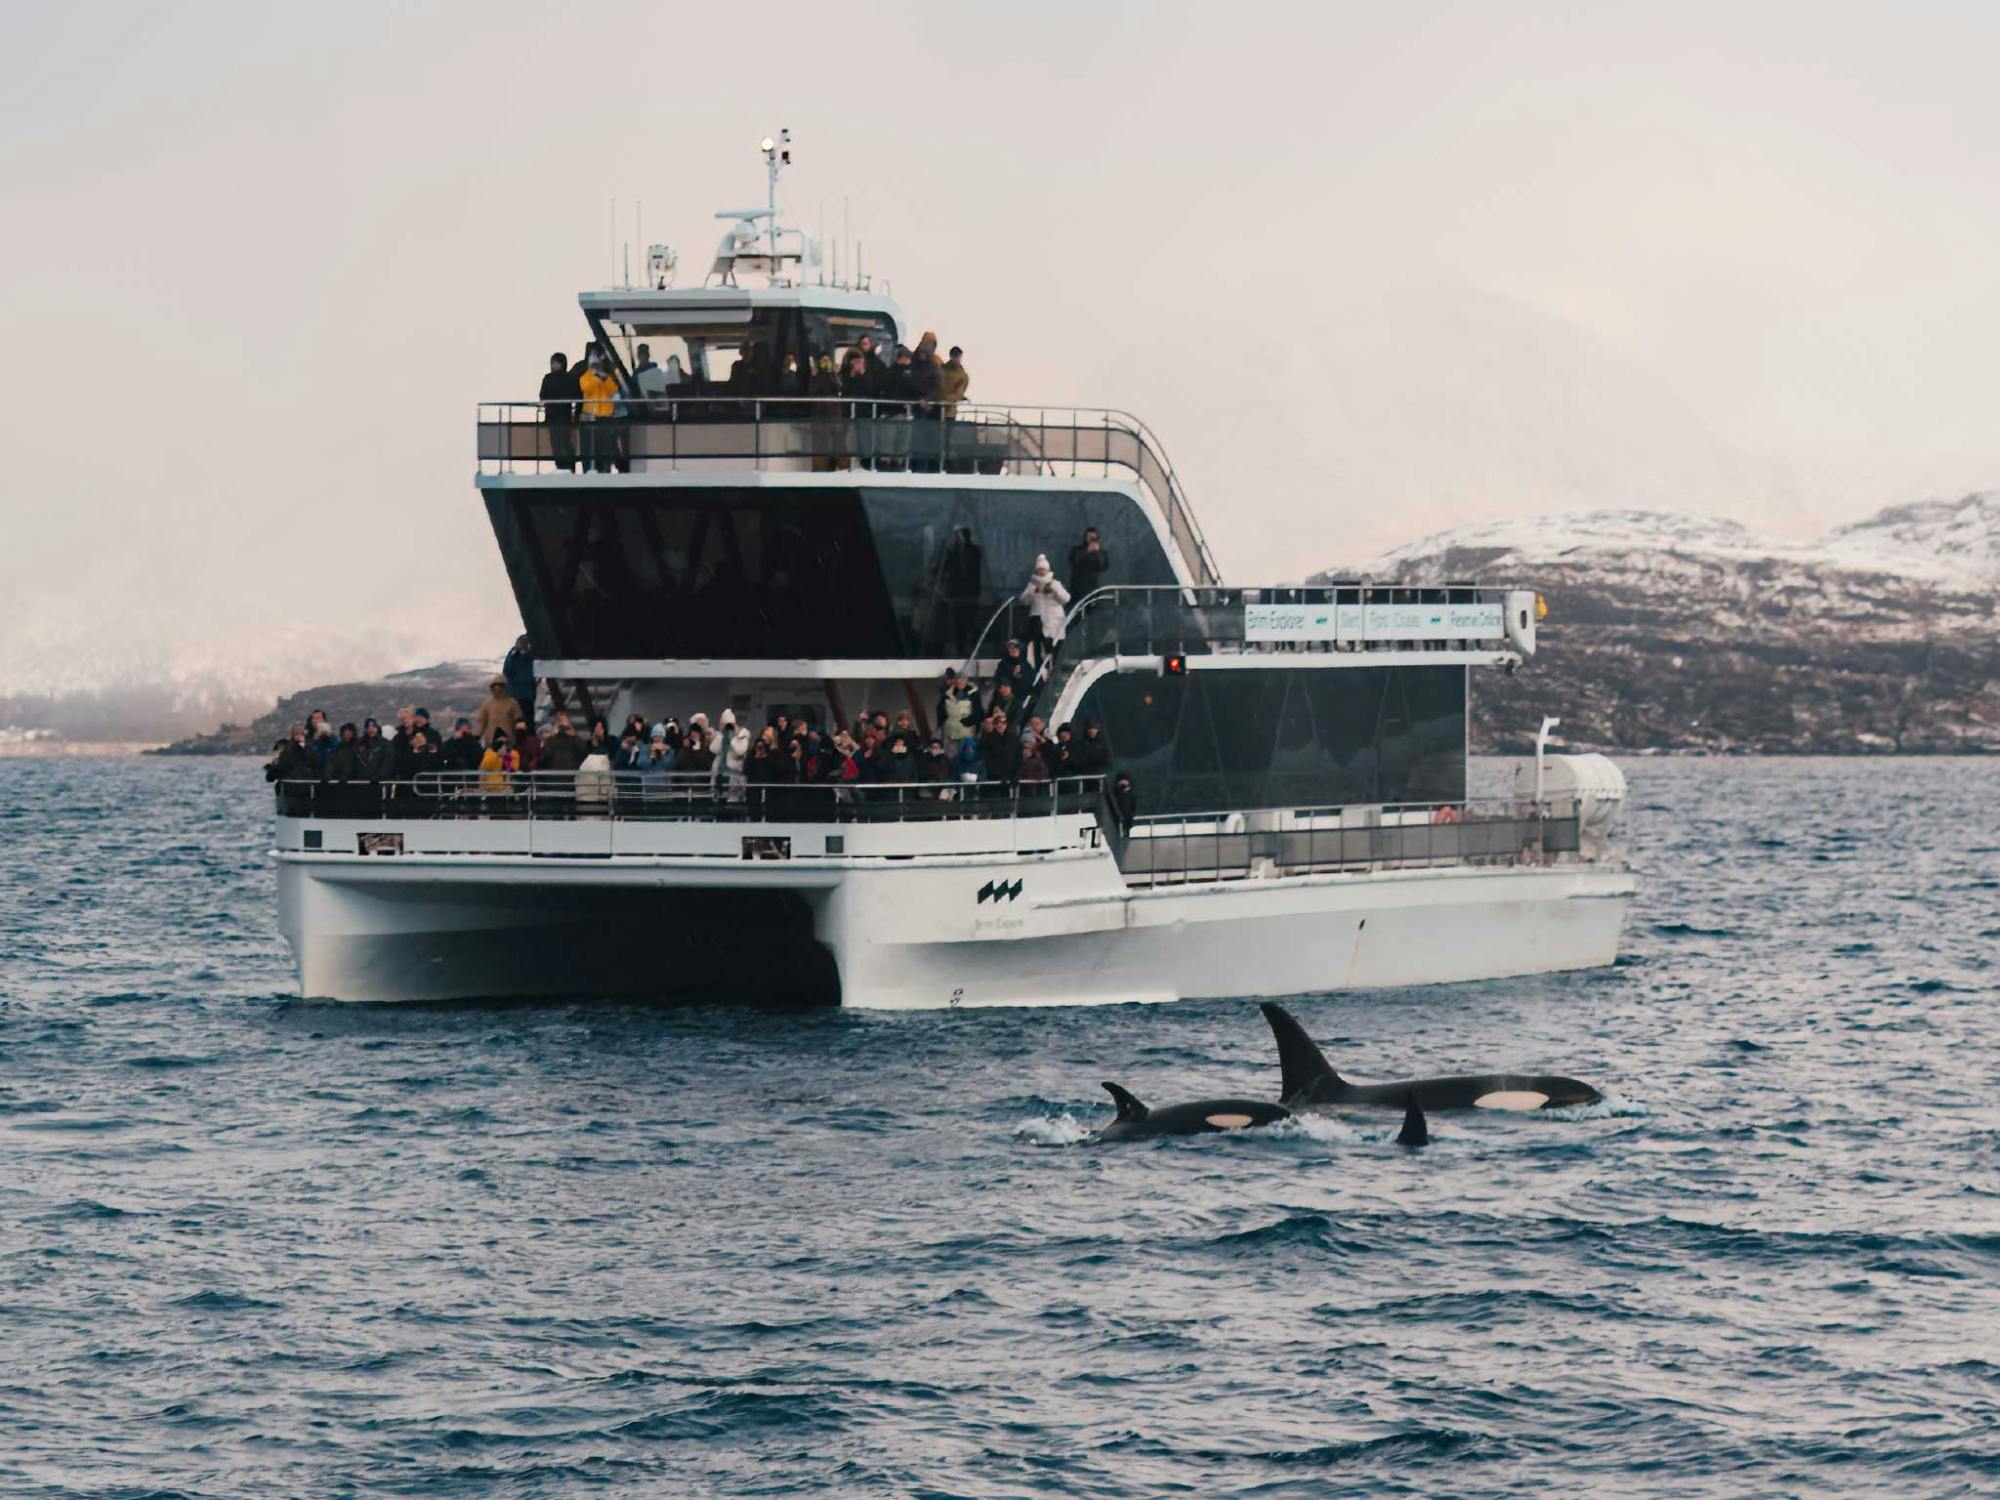 Stille Walbeobachtungstour mit dem Boot